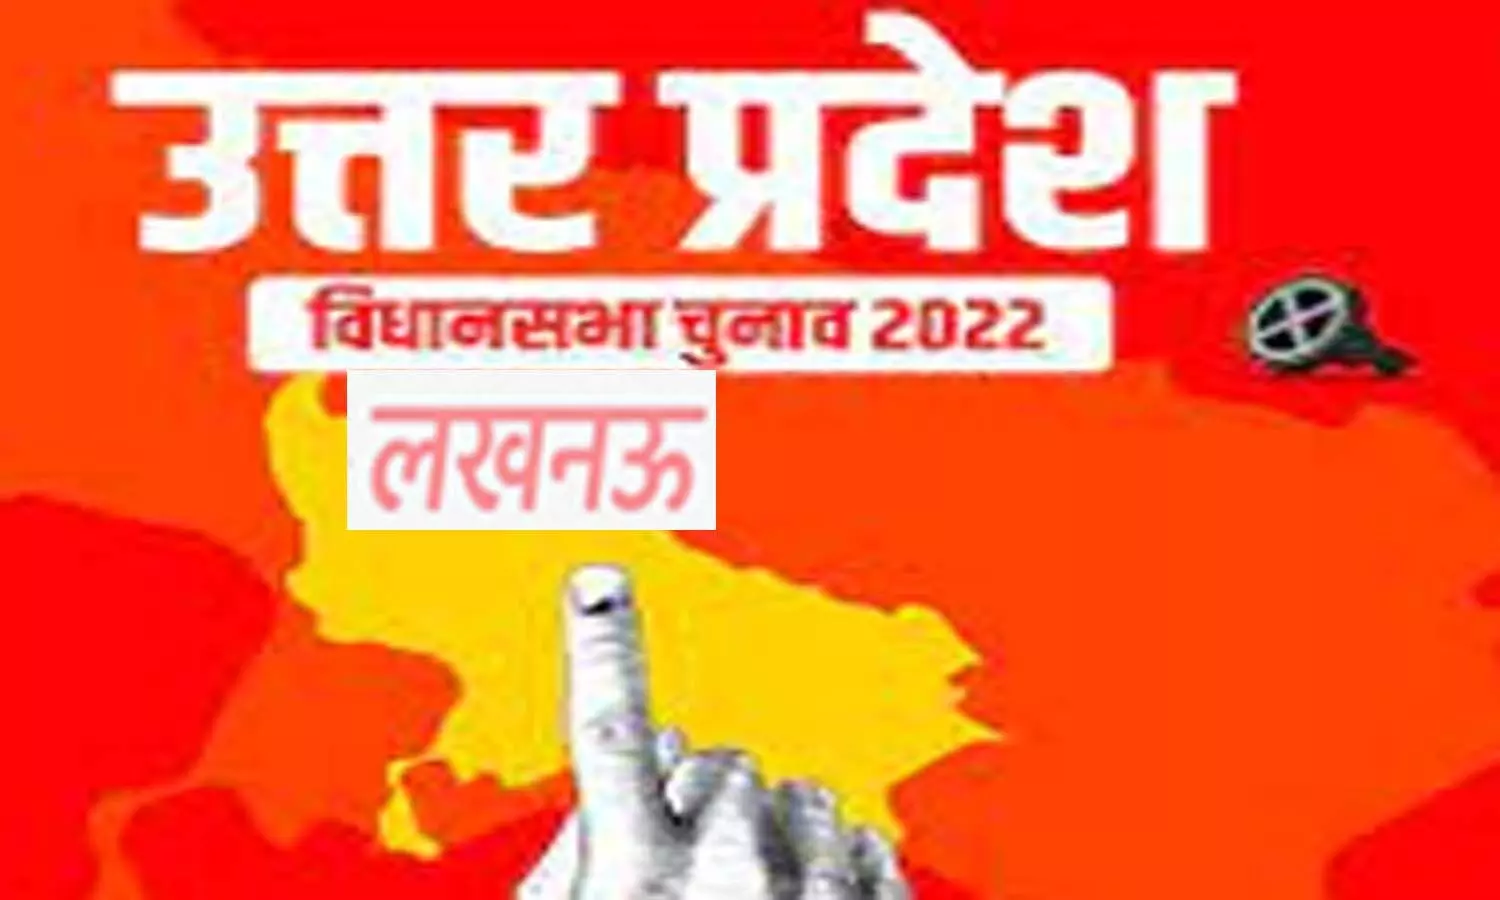 UP Election 2022: लखनऊ में वोट देने वालों को डीजल-पेट्रोल में मिलेगी 2% छूट, अभिभावकों के मतदान पर बच्चों को 10 अंक अधिक